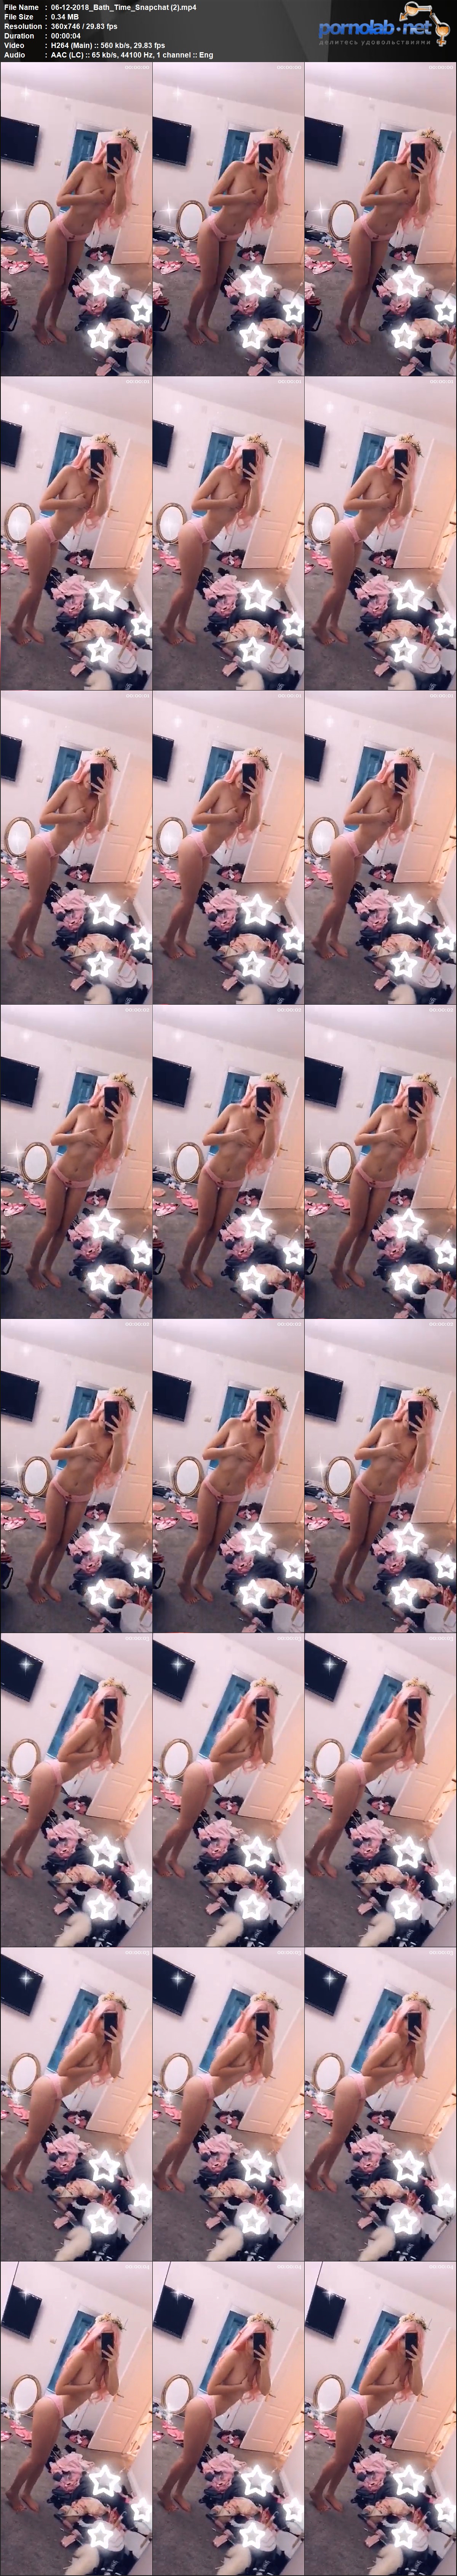 06 12 2018 Bath Time Snapchat 2 mp 4